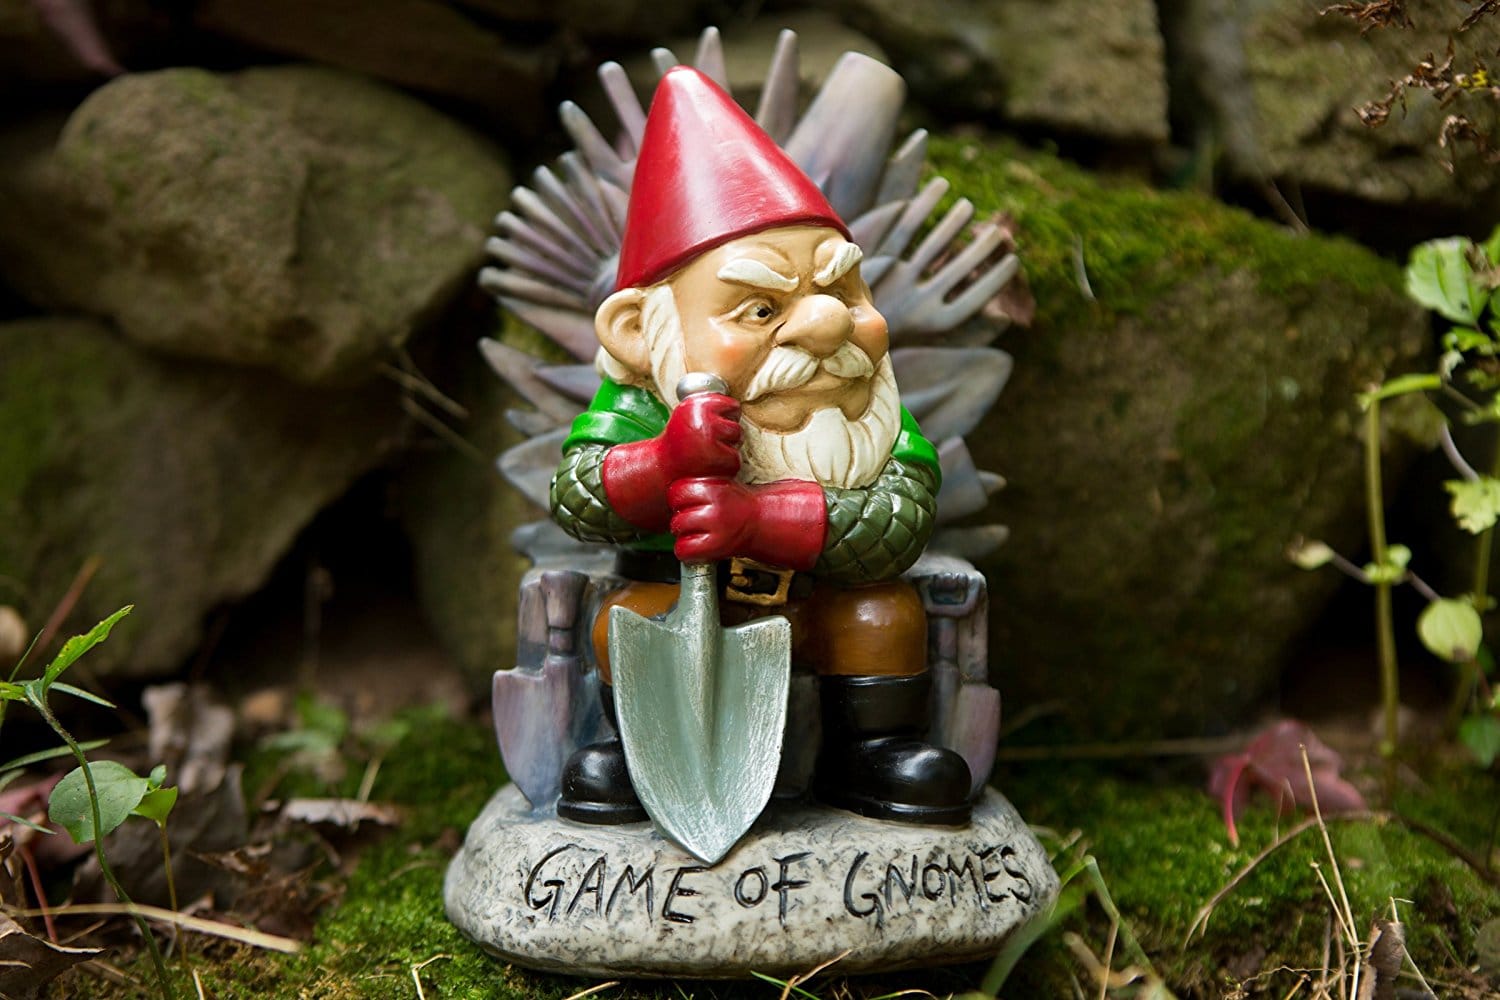 Gnomes Garden statue